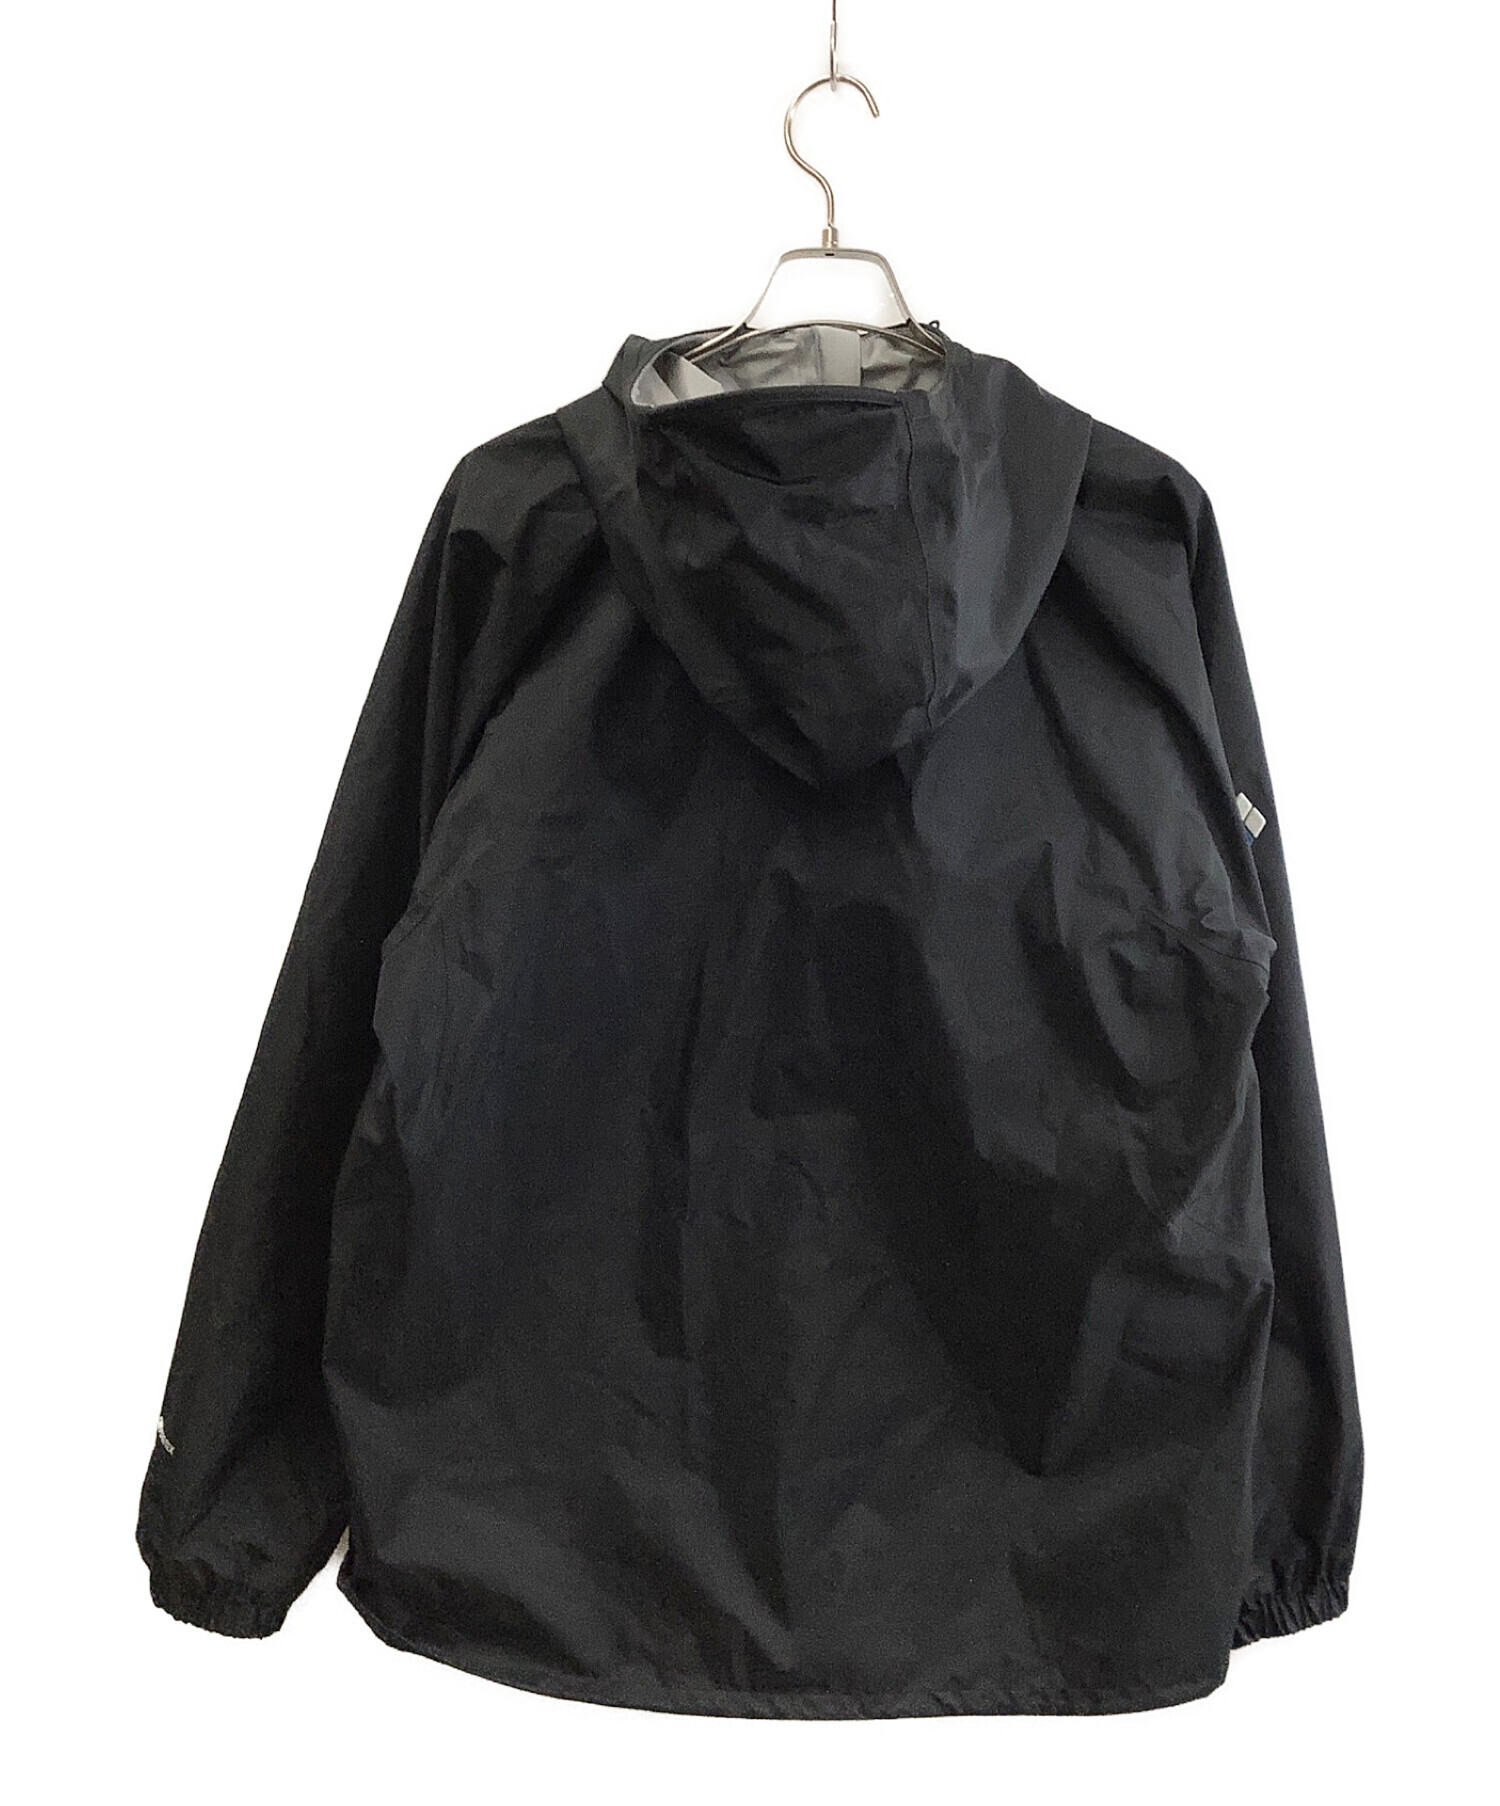 mont-bell (モンベル) ナイロンジャケット ブラック サイズ:XL